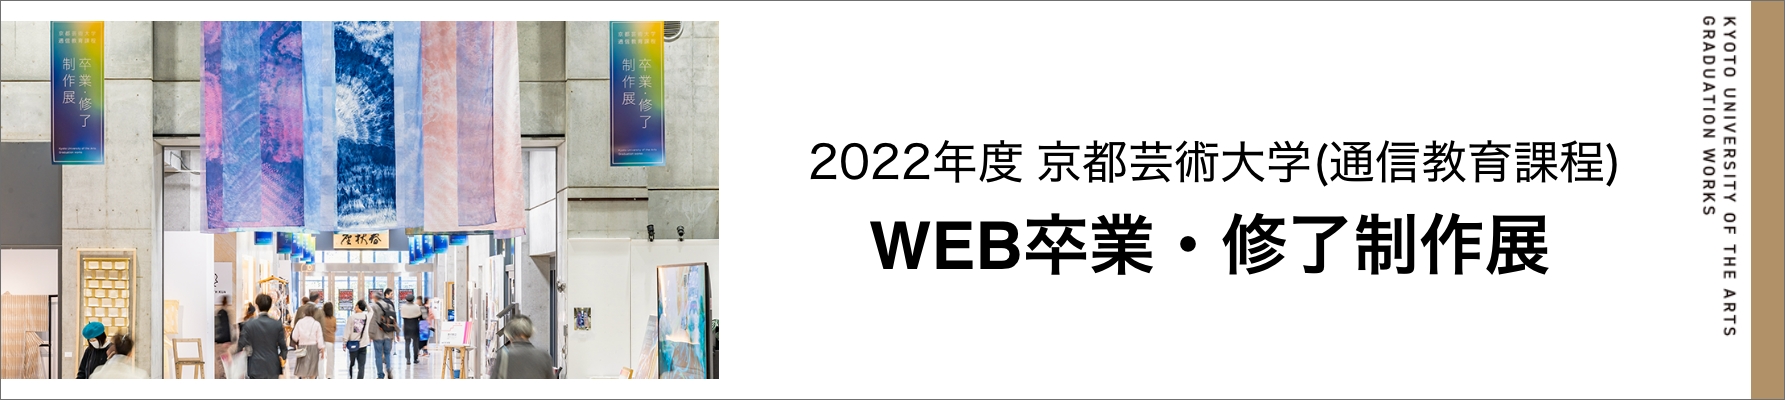 京都芸術大学（通信教育課程）WEB卒業・修了制作展 2022年度